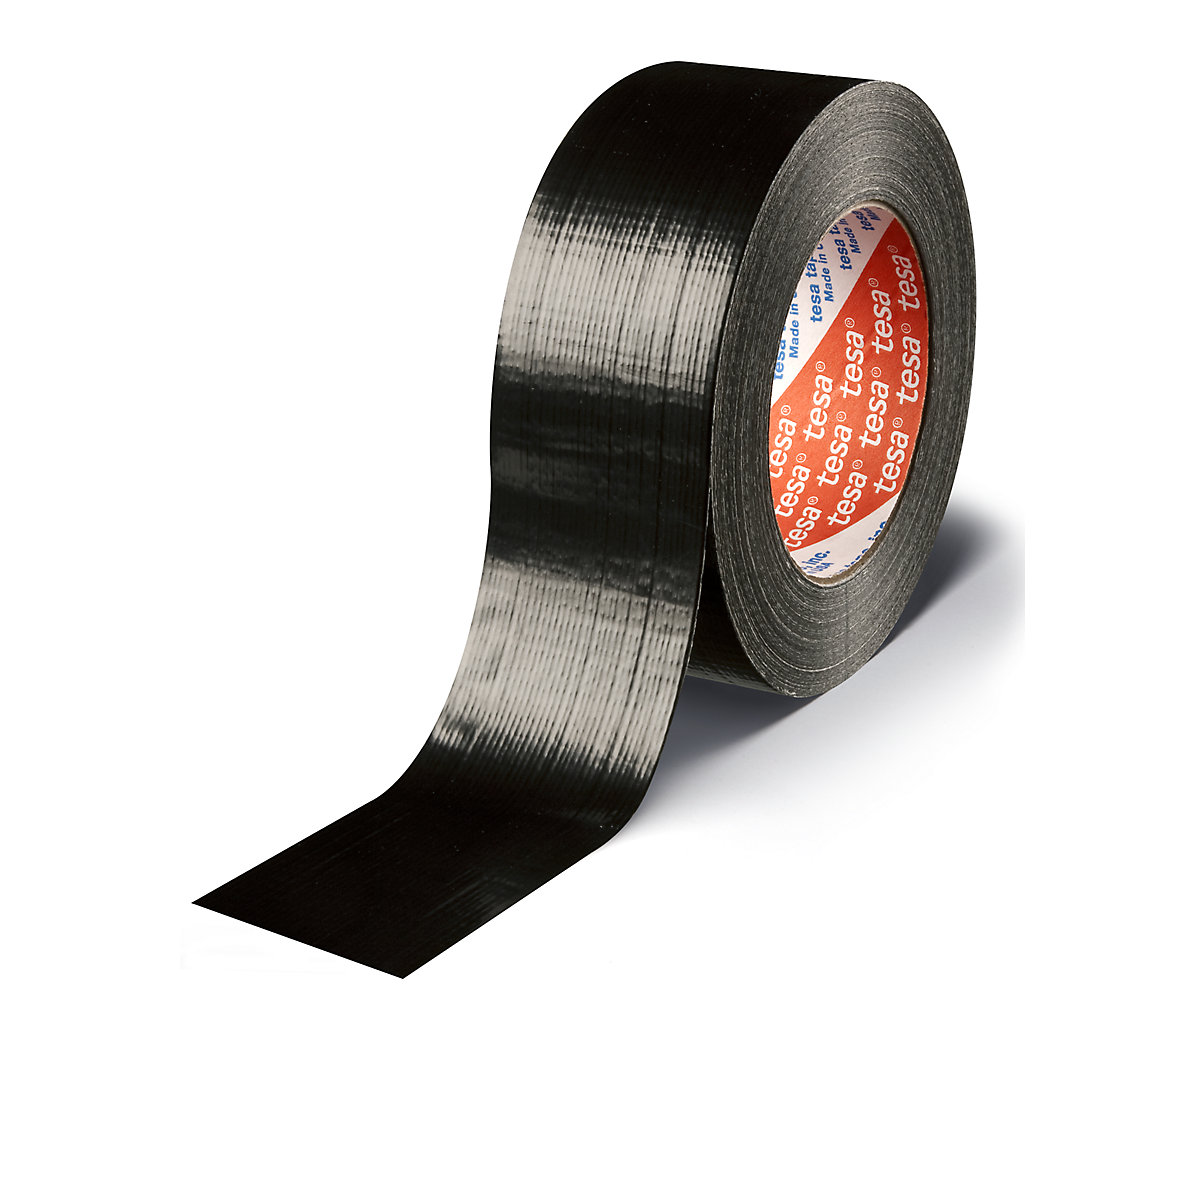 Traka od tkanine – tesa, platnena traka tesa® 4613 Standard, pak. 24 role, u crnoj boji, širina trake 48 mm-1